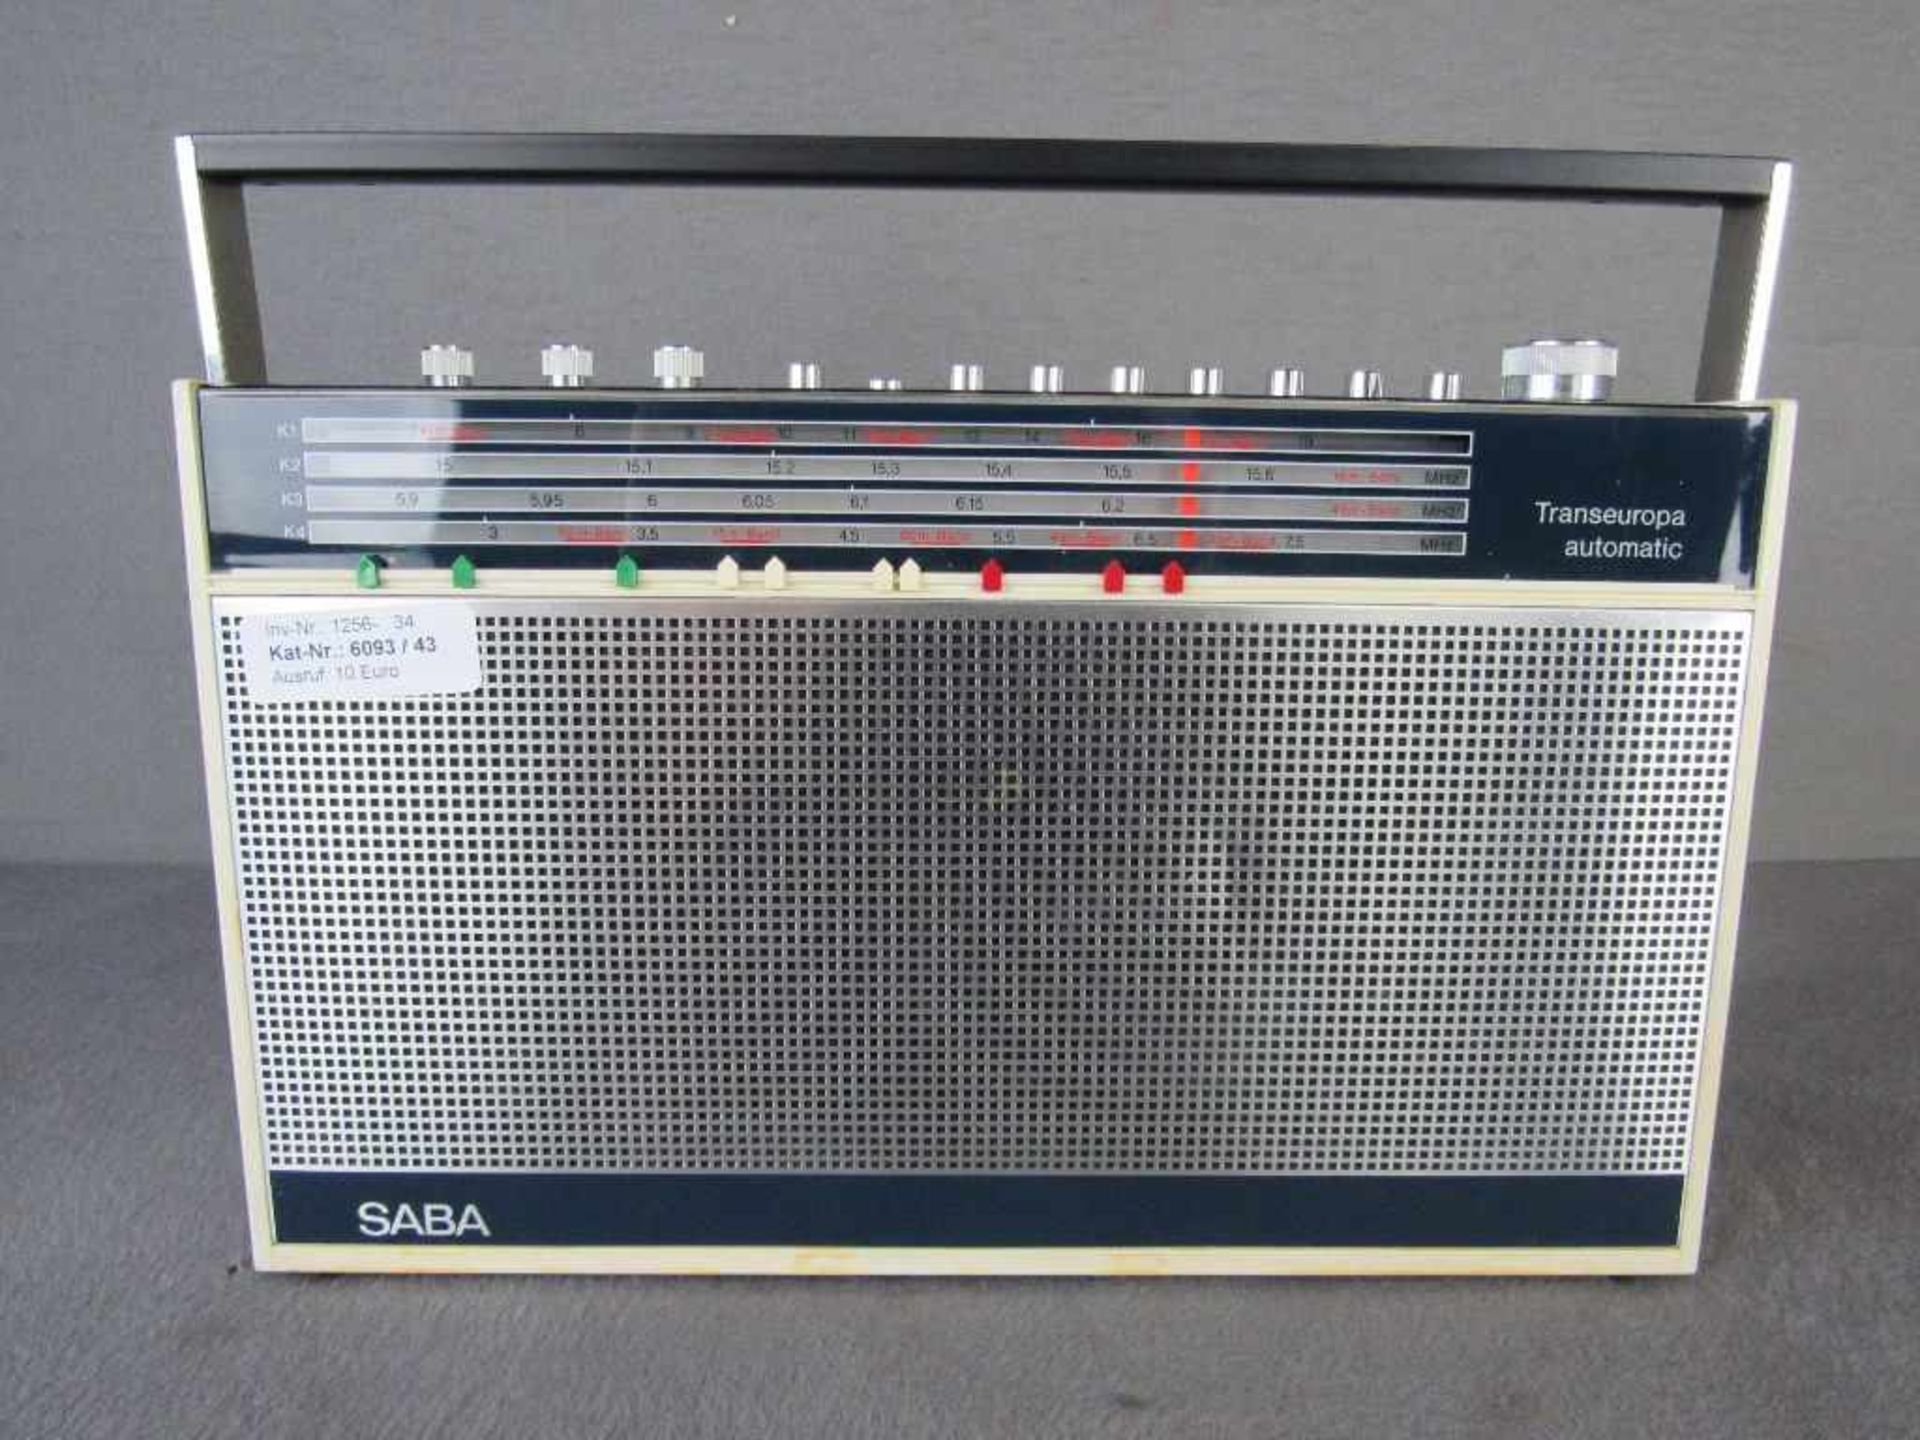 Kofferradio 60er Jahre Transeuropa Automatik Hersteller Saba- - -20.00 % buyer's premium on the